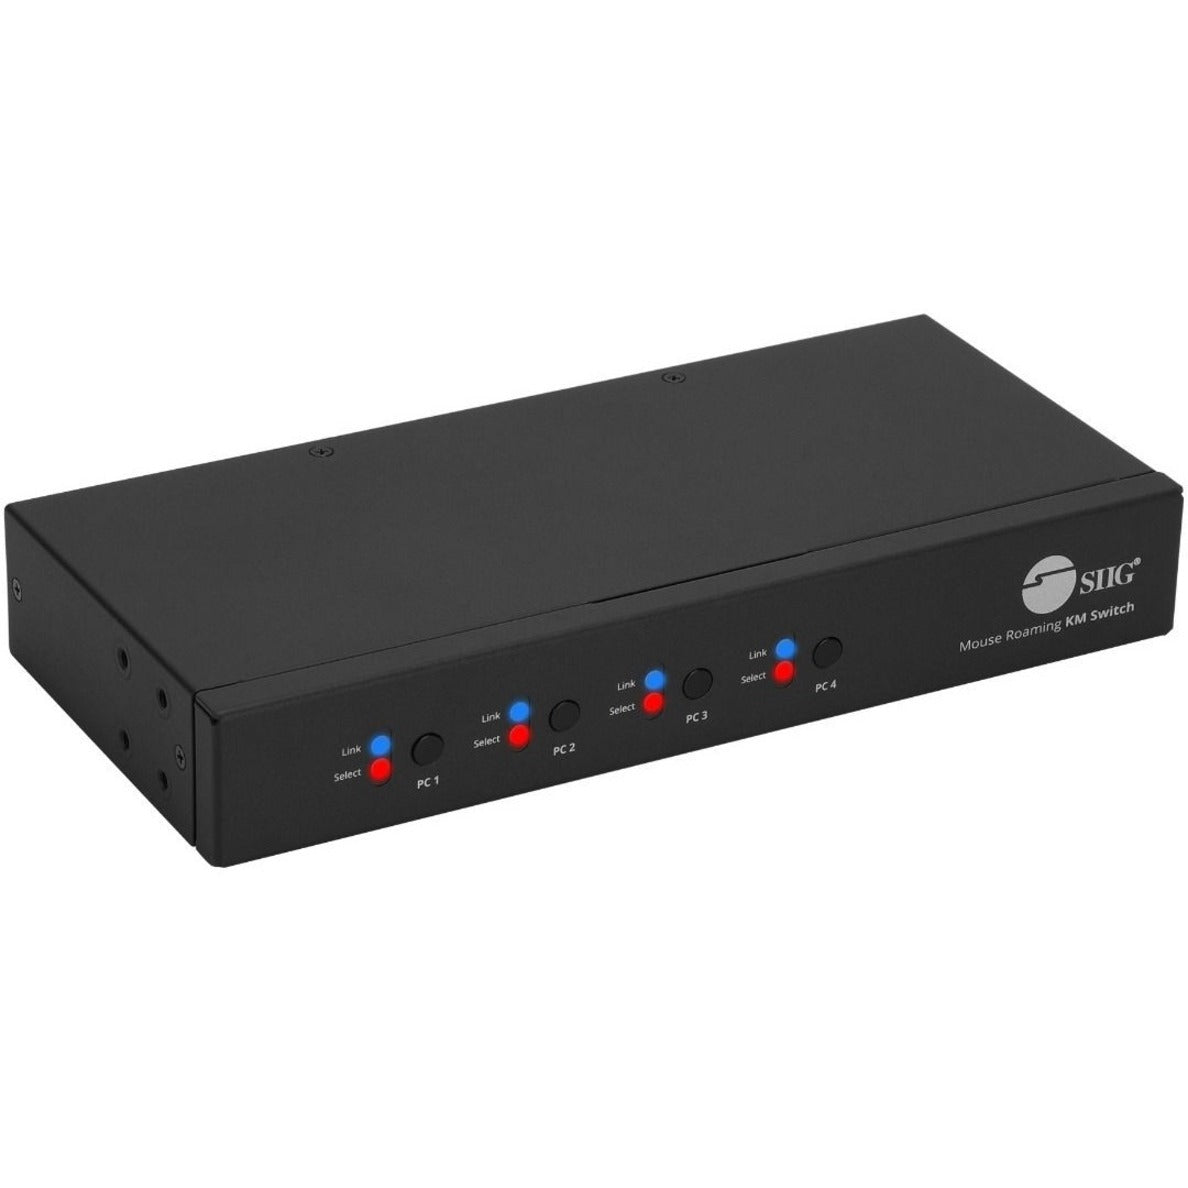 SIIG JU-SW4311-S1 4-Port الجوالة تبديل KM مع موزع USB 2.0 ، توصيل وتشغيل ، TAA متوافق الماركة: SIIG